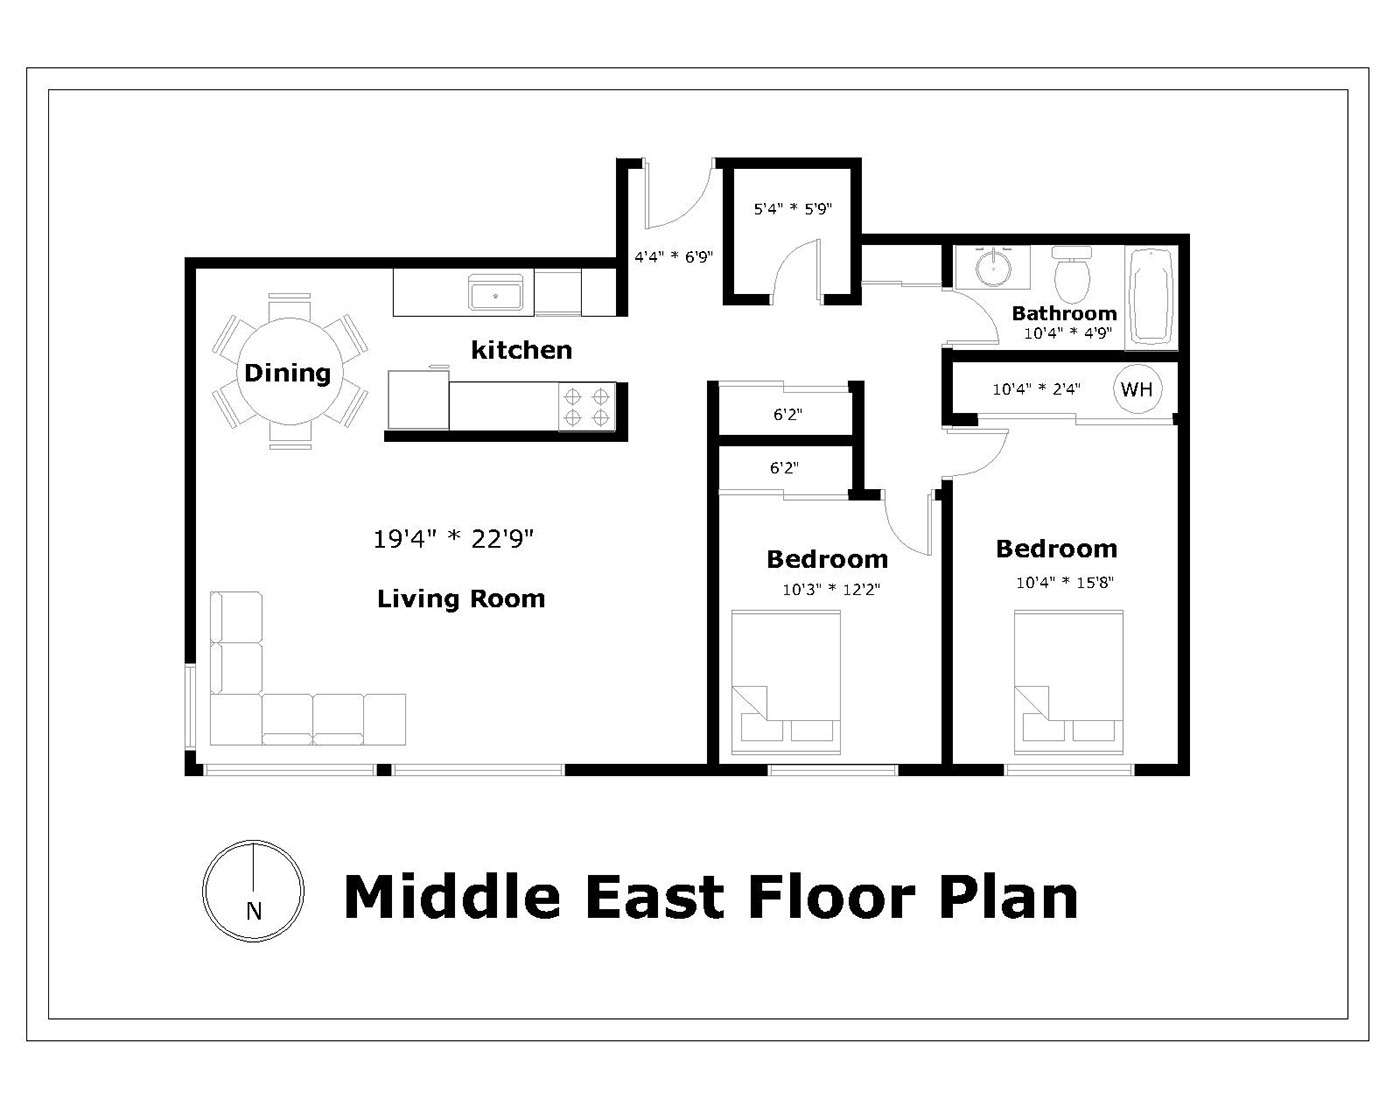 2D floorplan furniture Layout design middleeast archtecture interior design  visualization modern